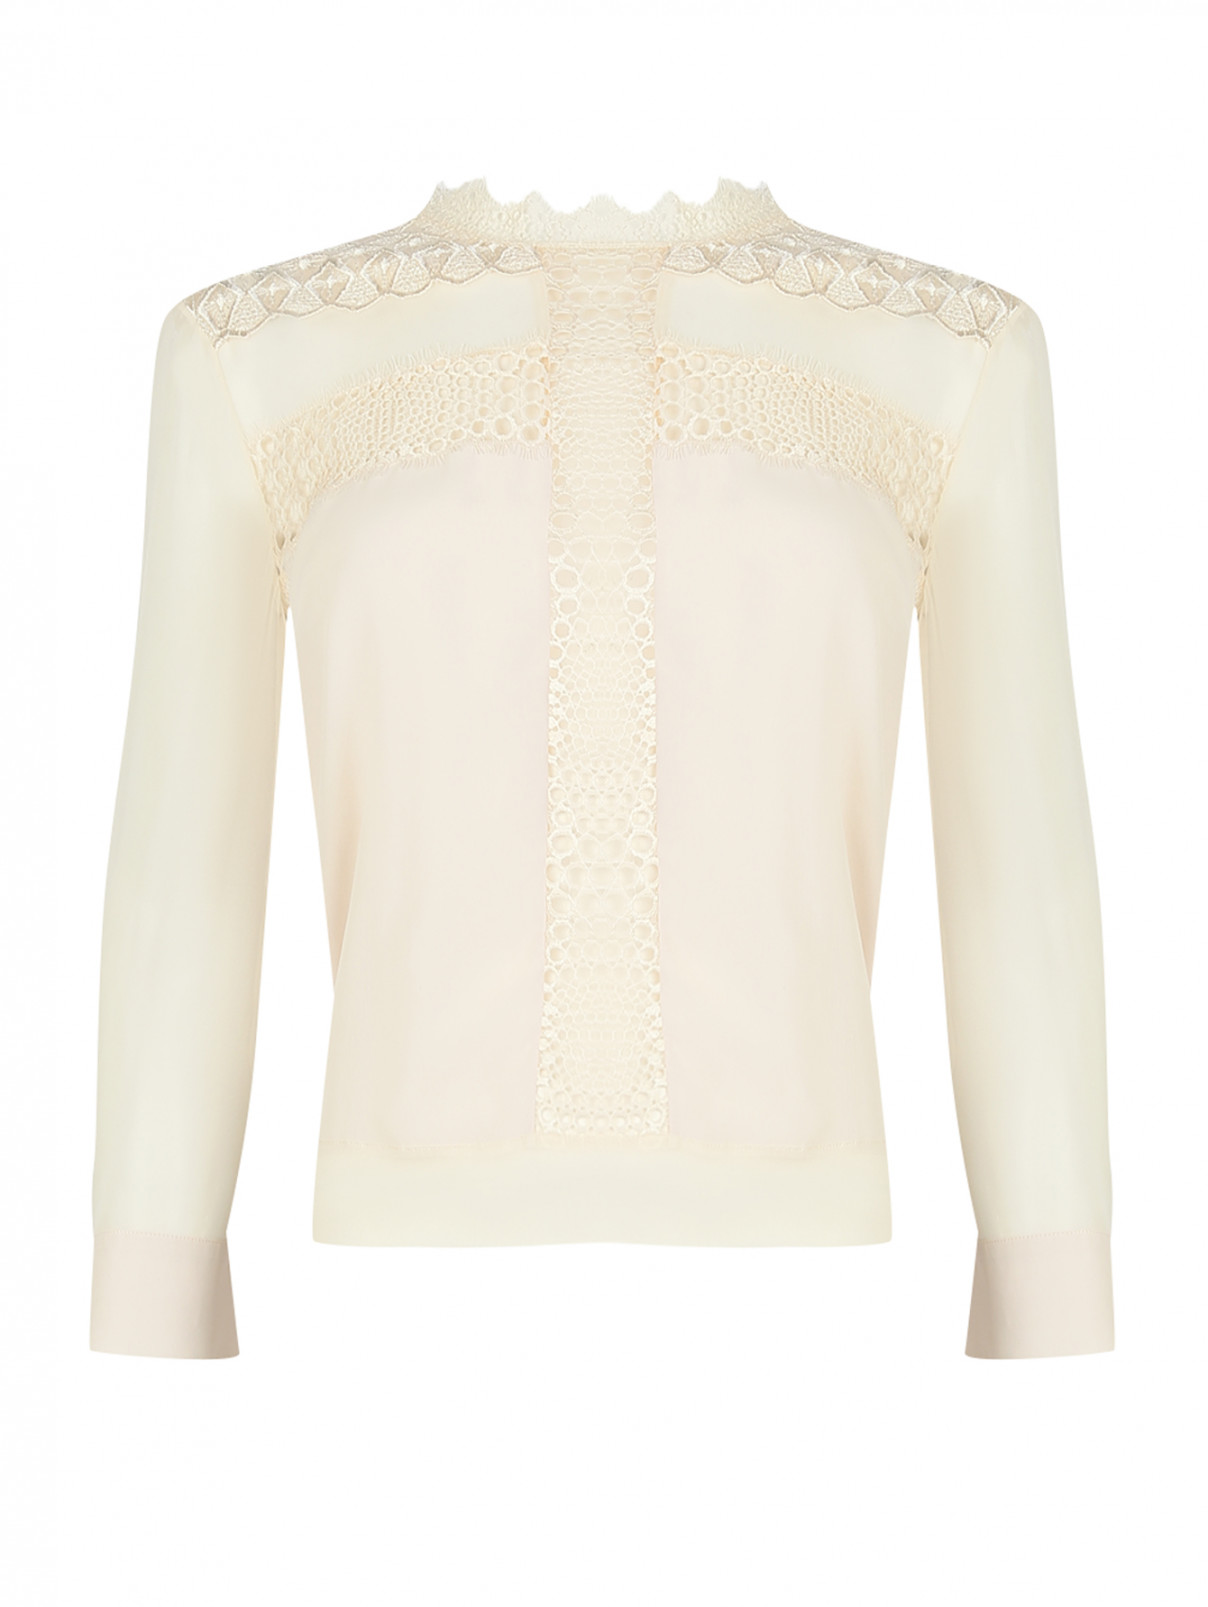 Блуза из шелка, декорированная кружевом Junior Gaultier  –  Общий вид  – Цвет:  Бежевый